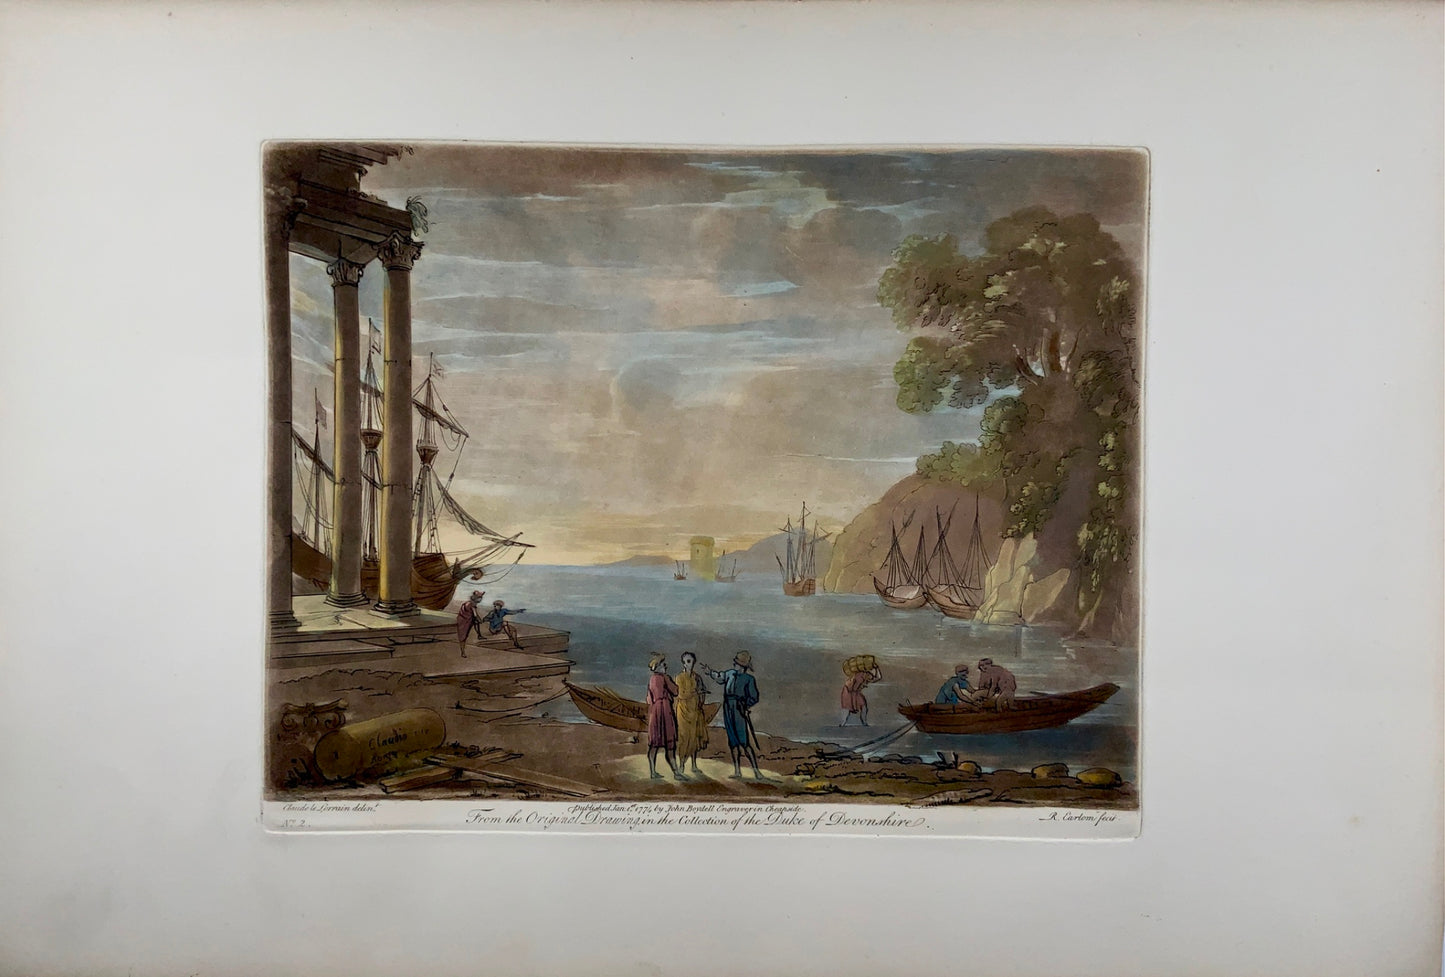 1774 Richard Earlom secondo CLAUDE LORRAIN - Veduta del porto in Italia - Carta di grandi dimensioni - Topografia, incisione magistrale